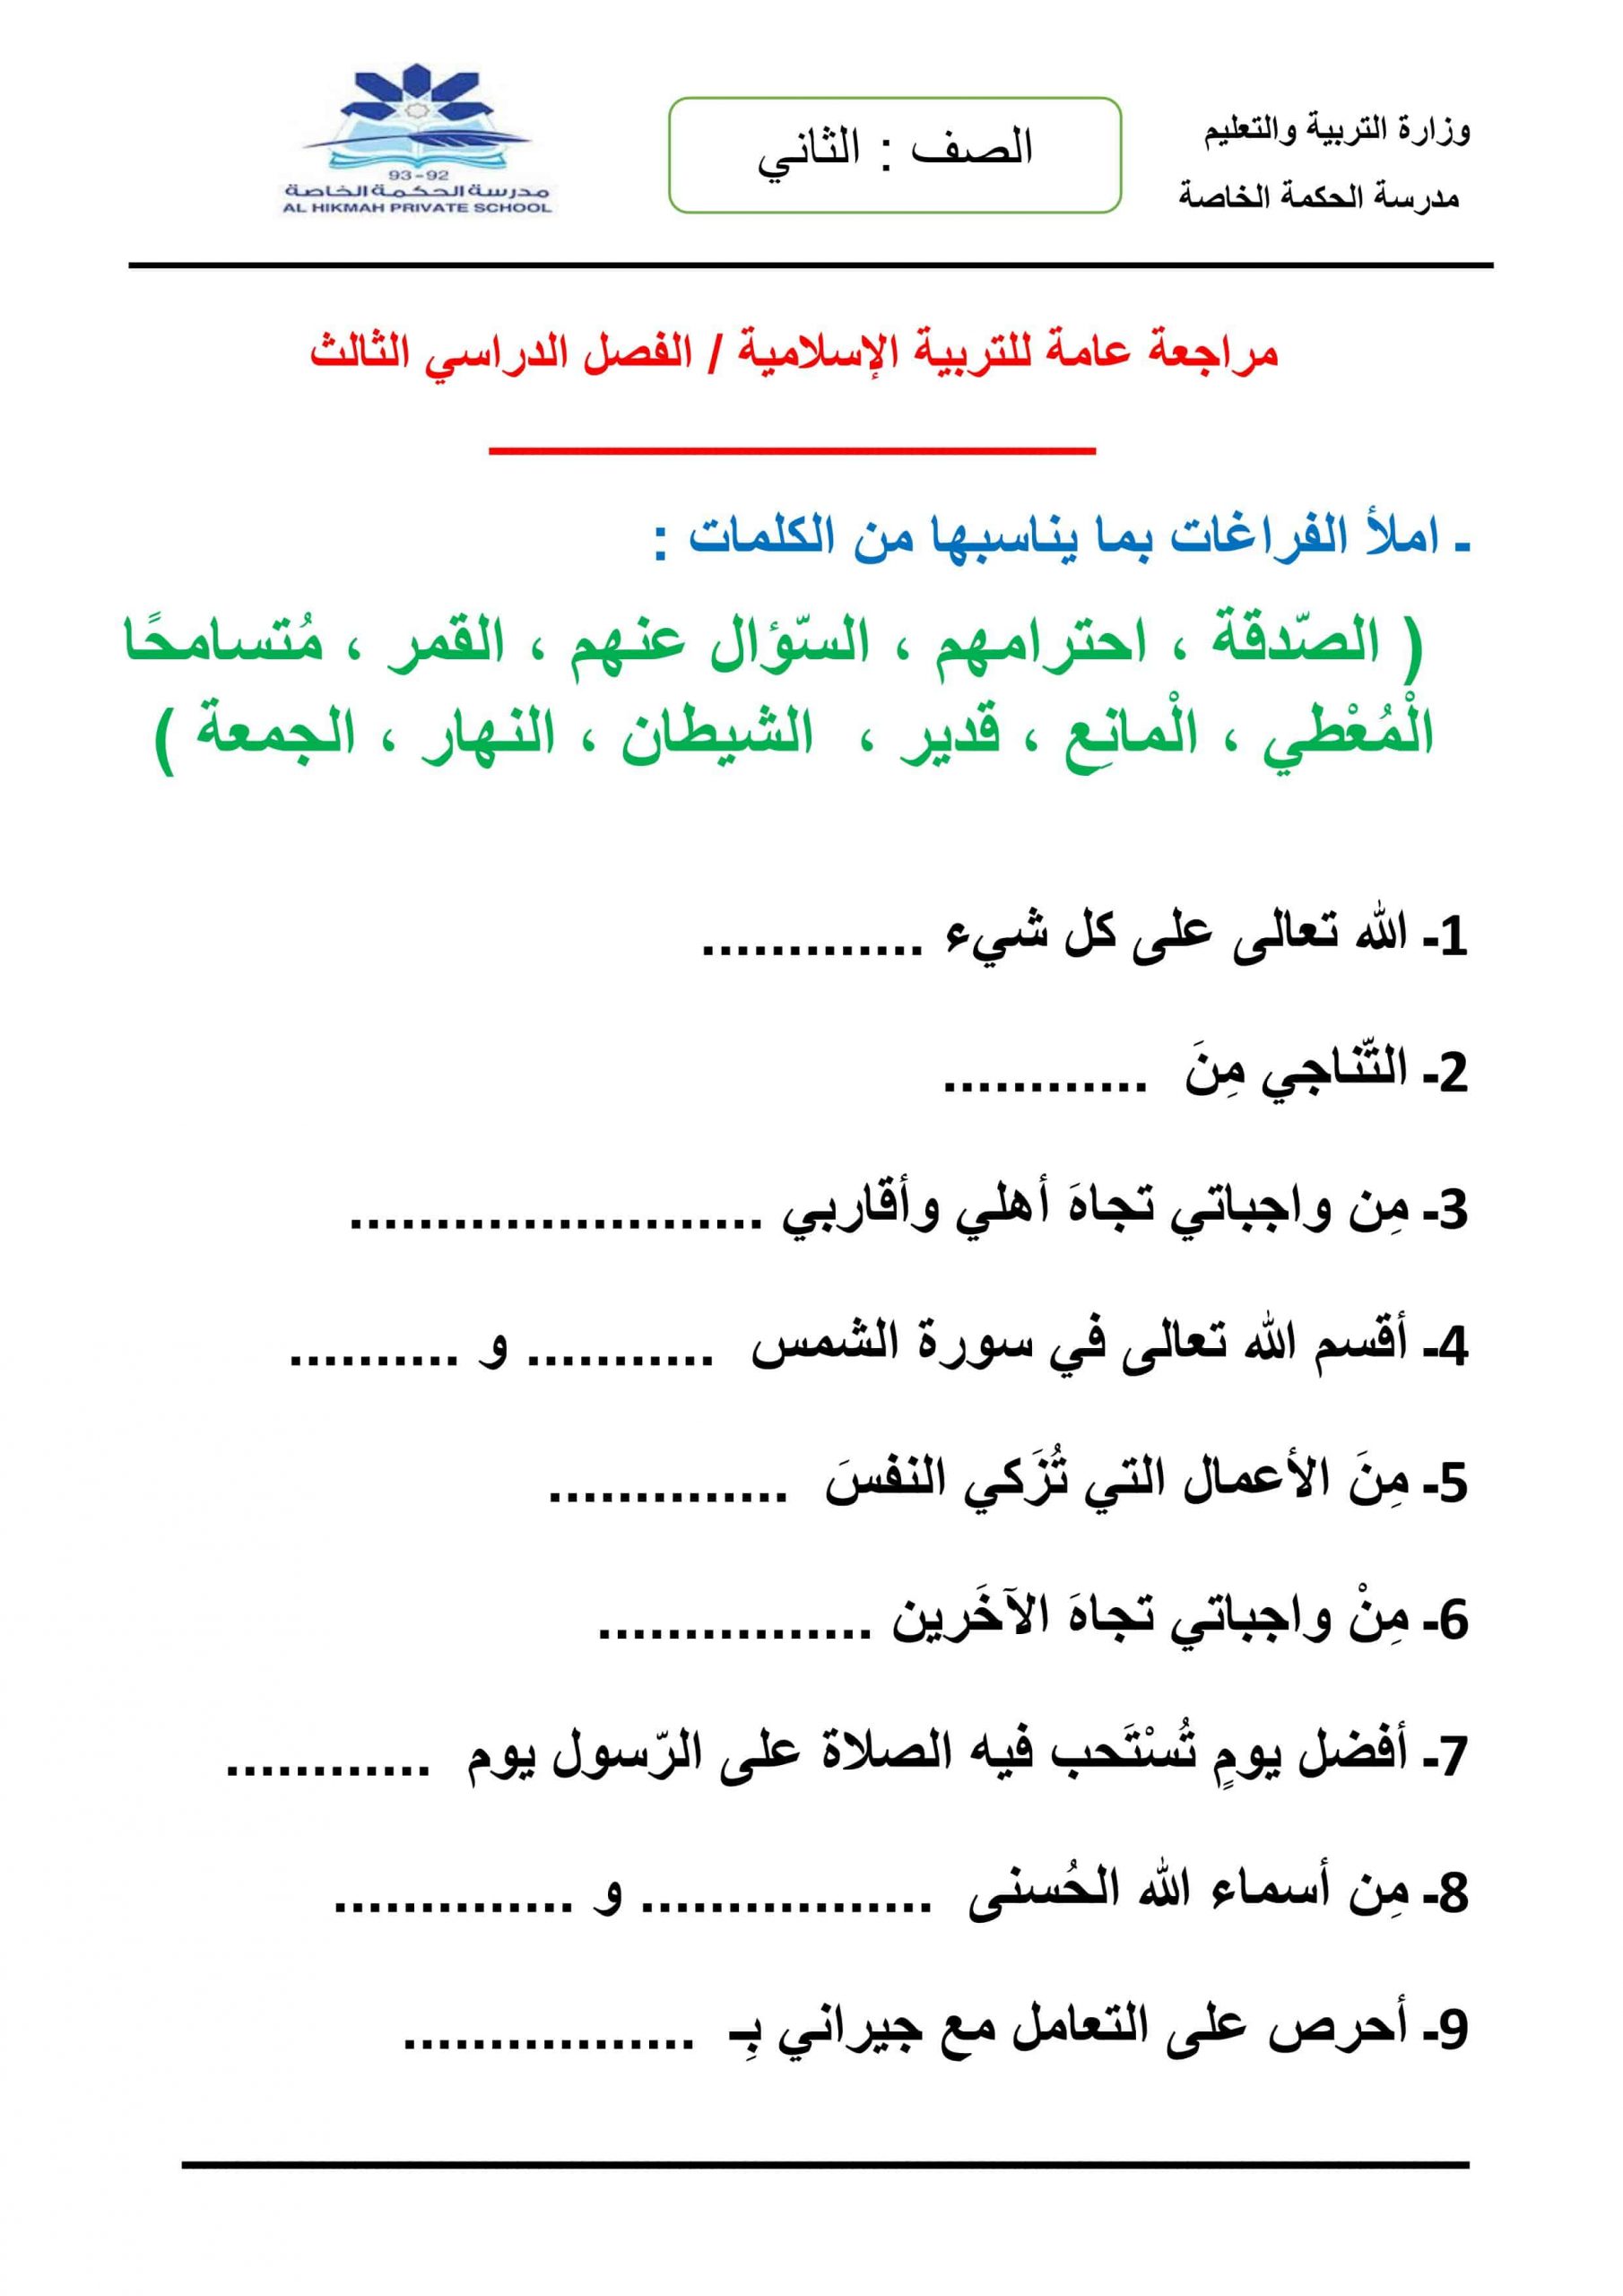 ورقة عمل مراجعة عامة الفصل الدراسي الثالث الصف الثاني مادة التربية الإسلامية